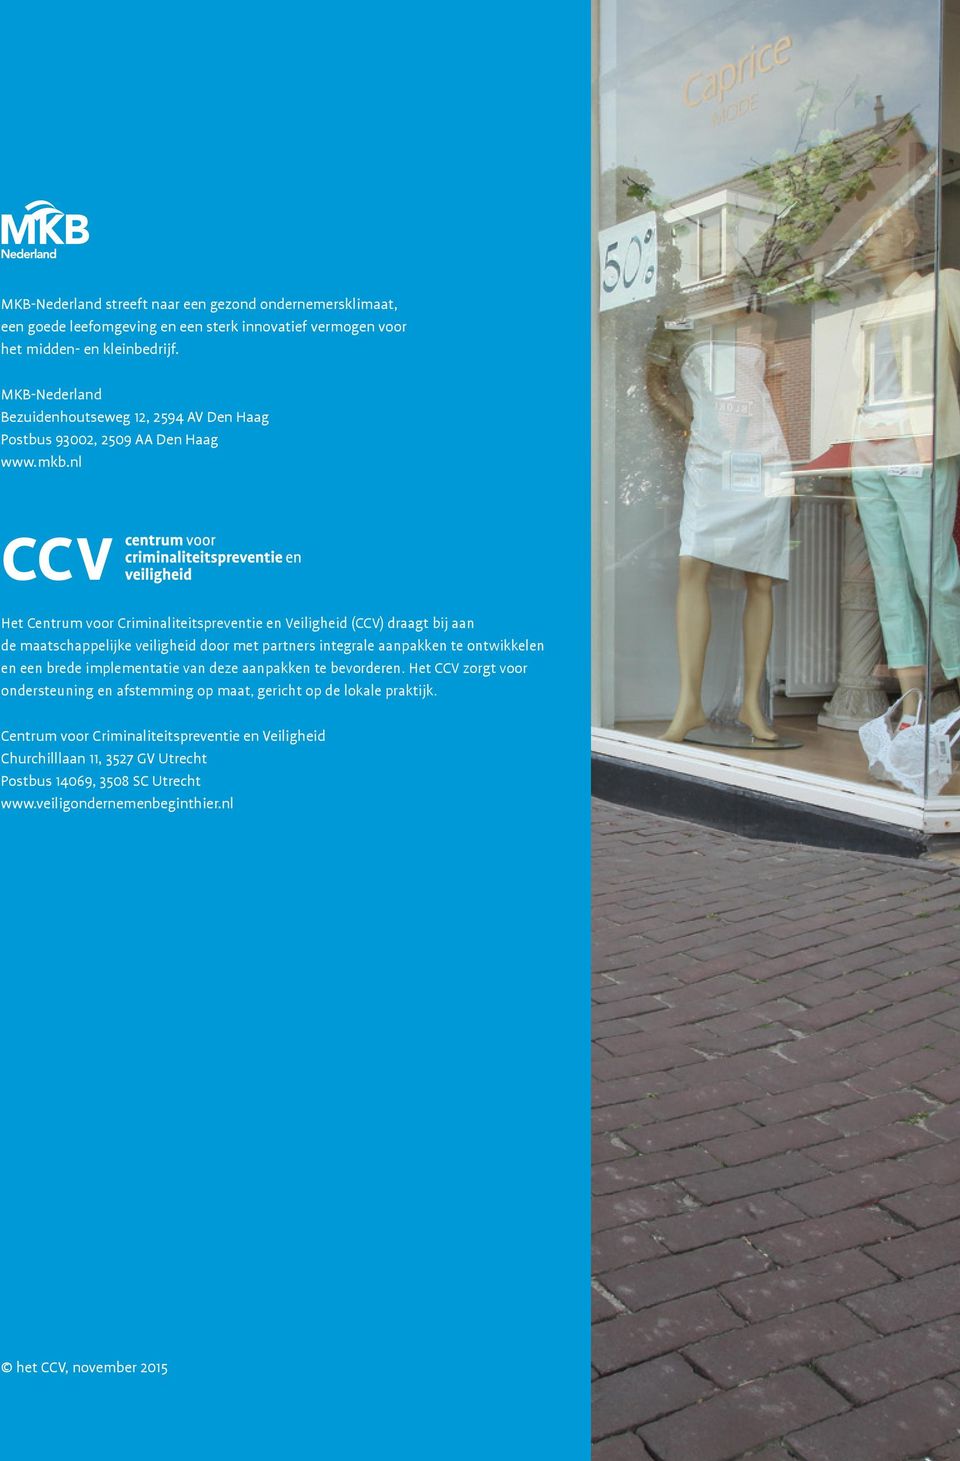 nl Het Centrum voor Criminaliteitspreventie en Veiligheid (CCV) draagt bij aan de maatschappelijke veiligheid door met partners integrale aanpakken te ontwikkelen en een brede implementatie van